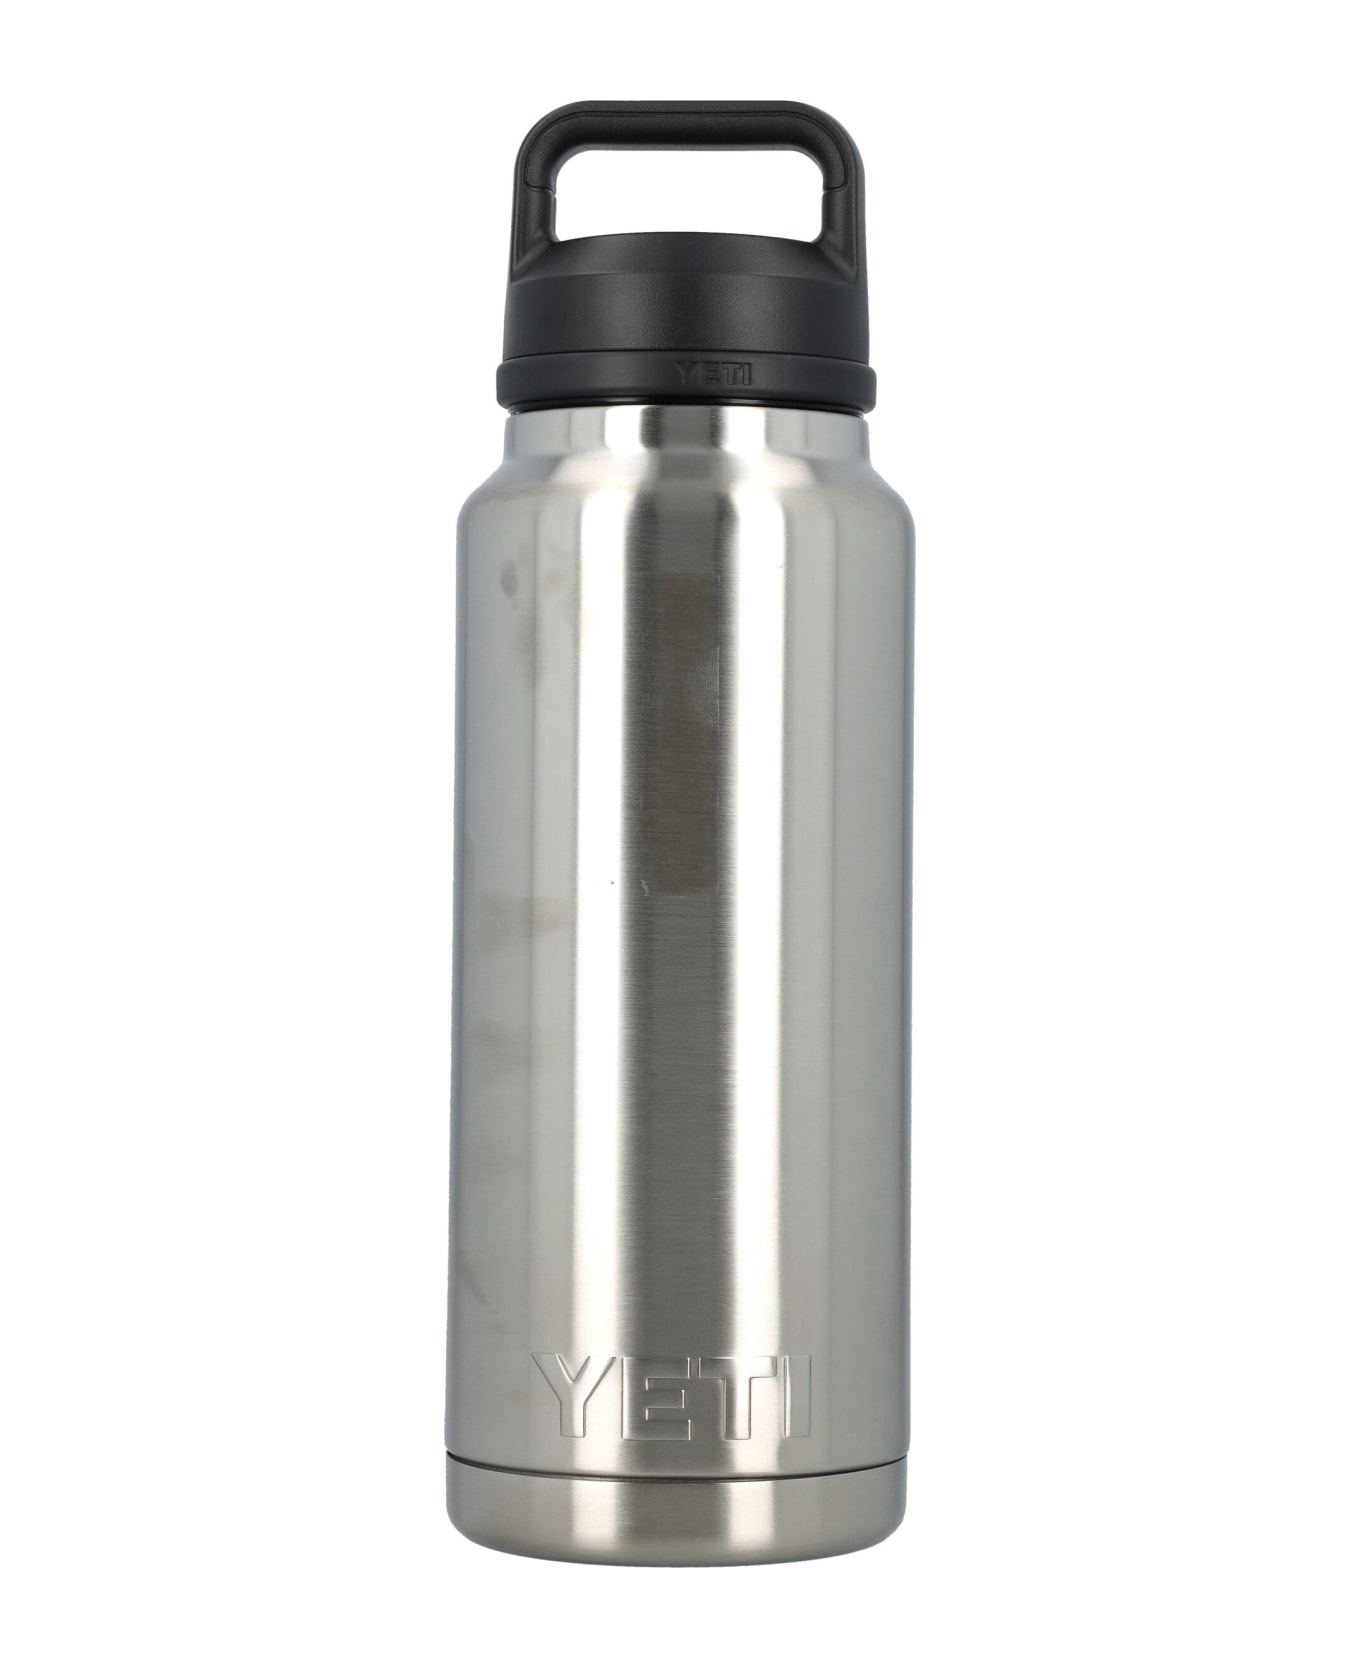 Yeti 36 Oz Water Bottle - STAINLESS デジタルアクセサリー